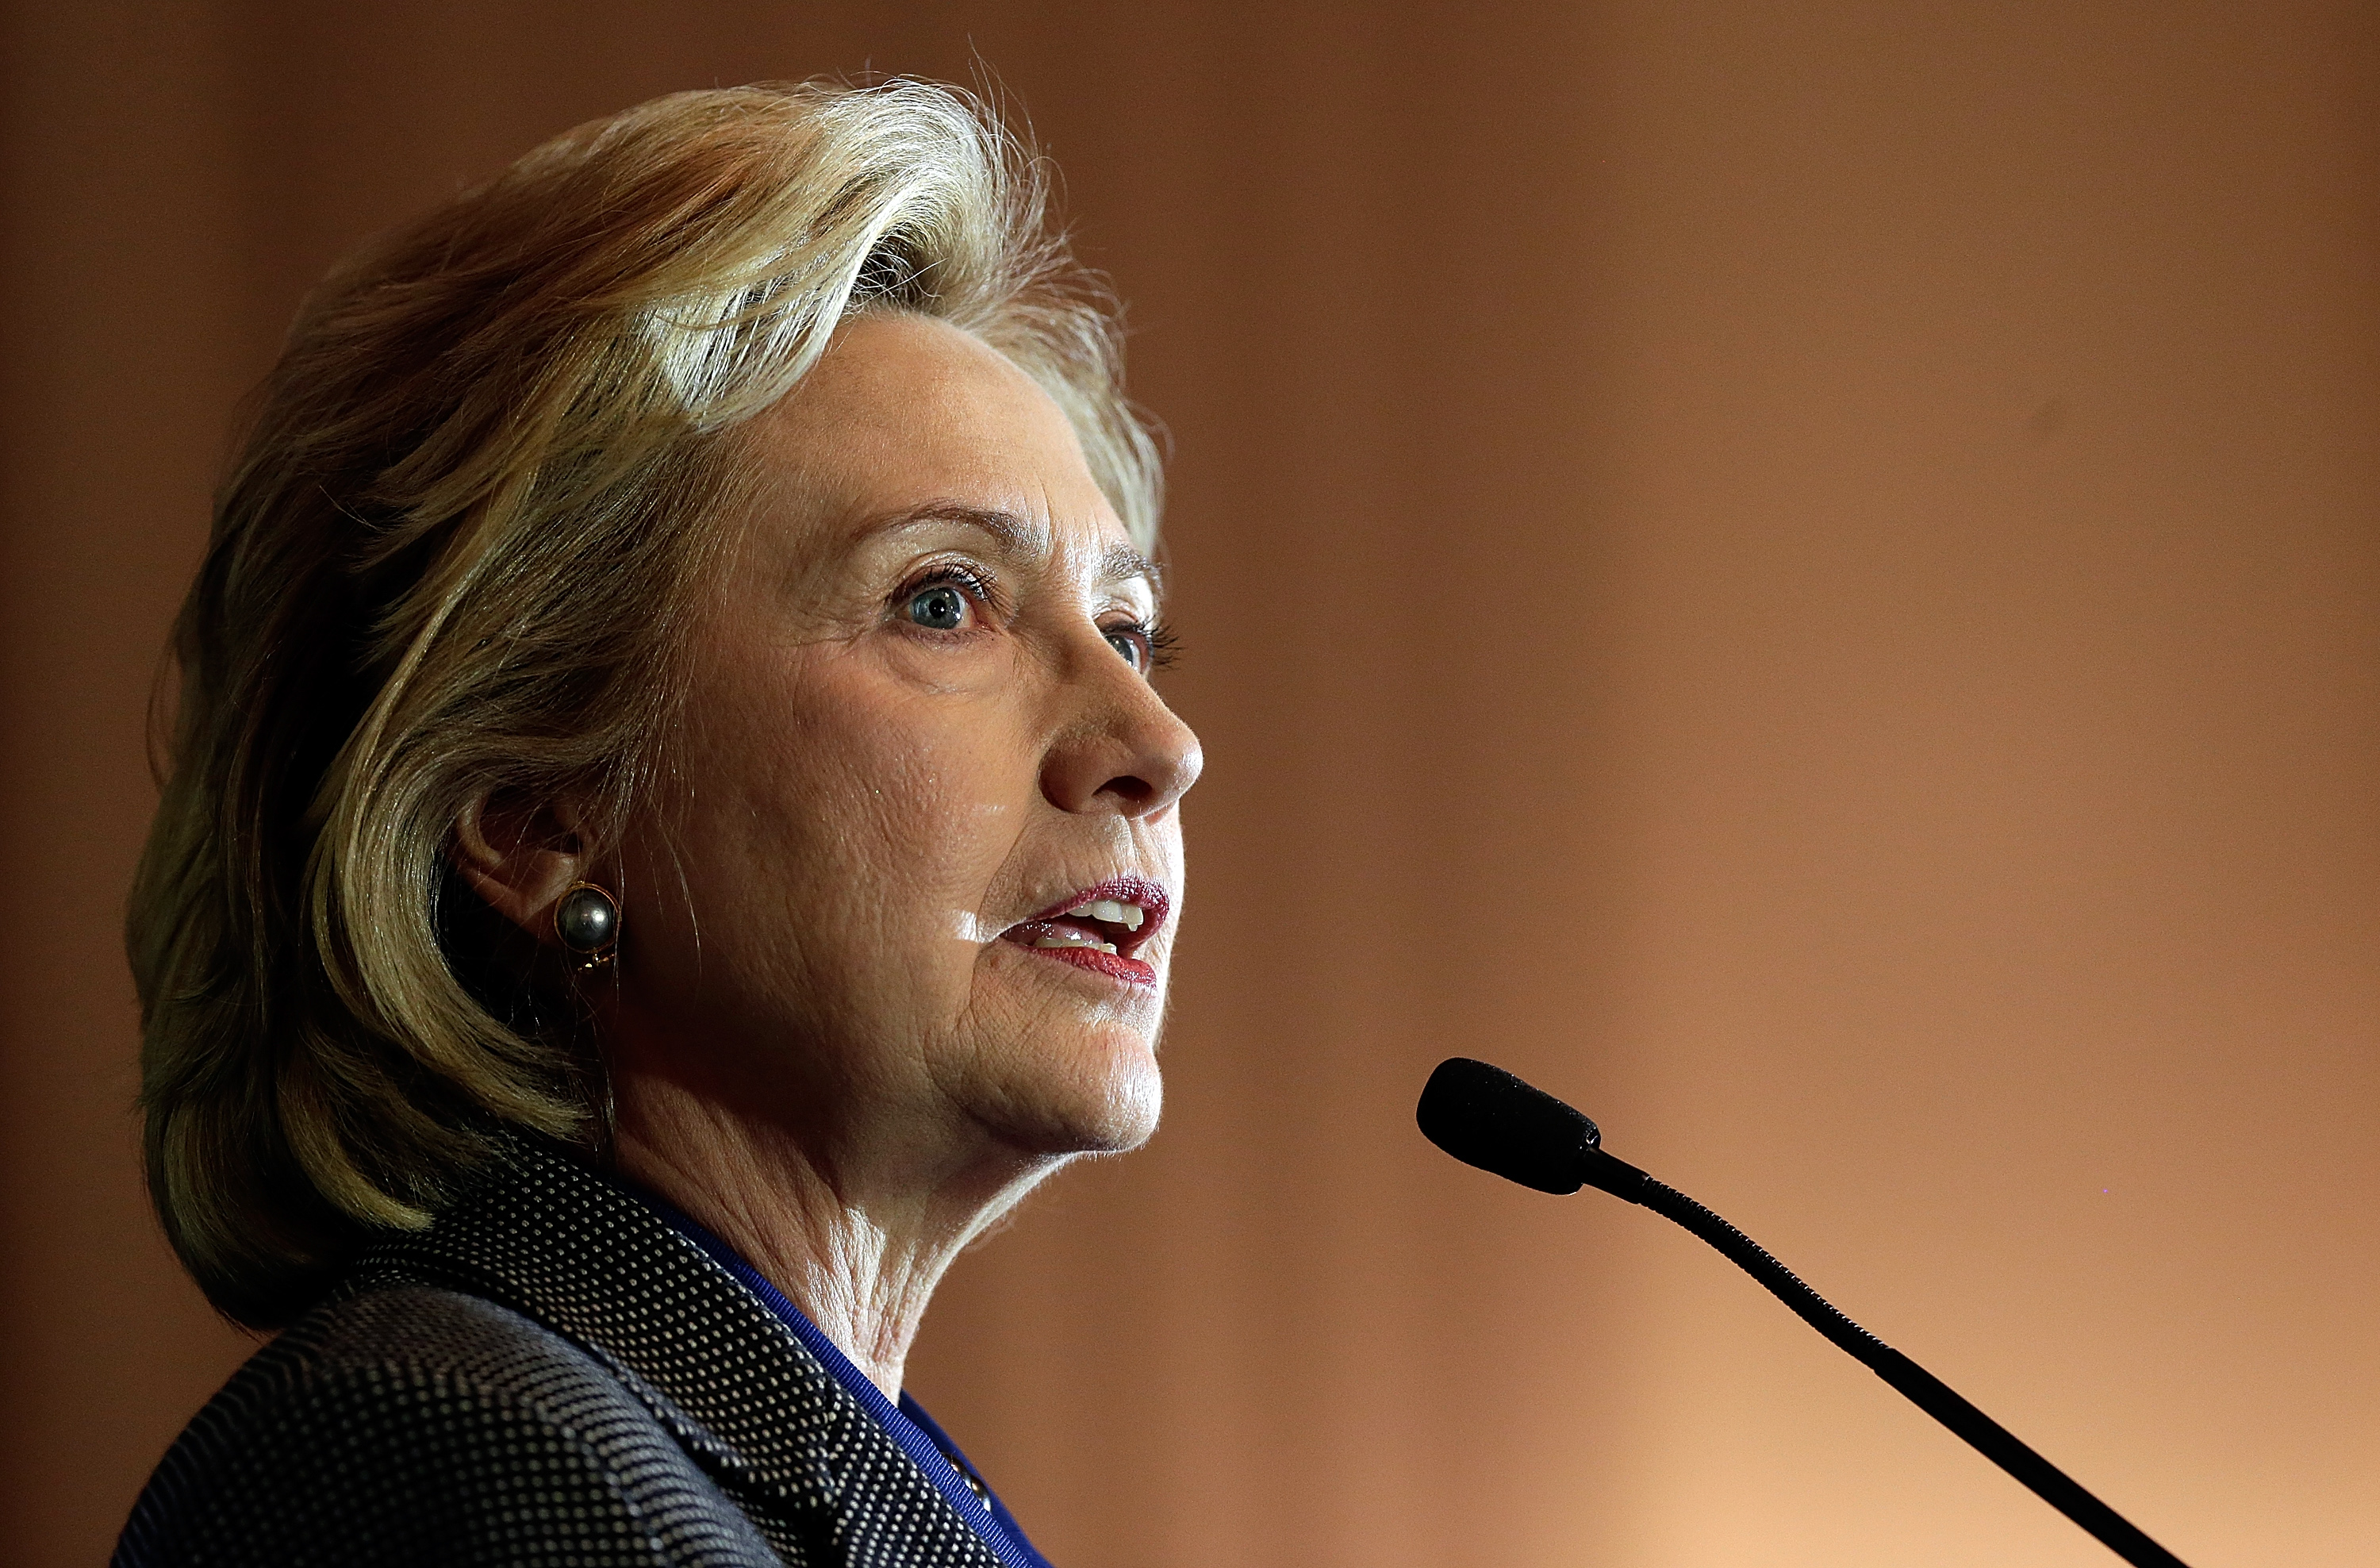 Hillary Clinton: Monica Lewinsky a “narcissistic loony toon” - CBS News